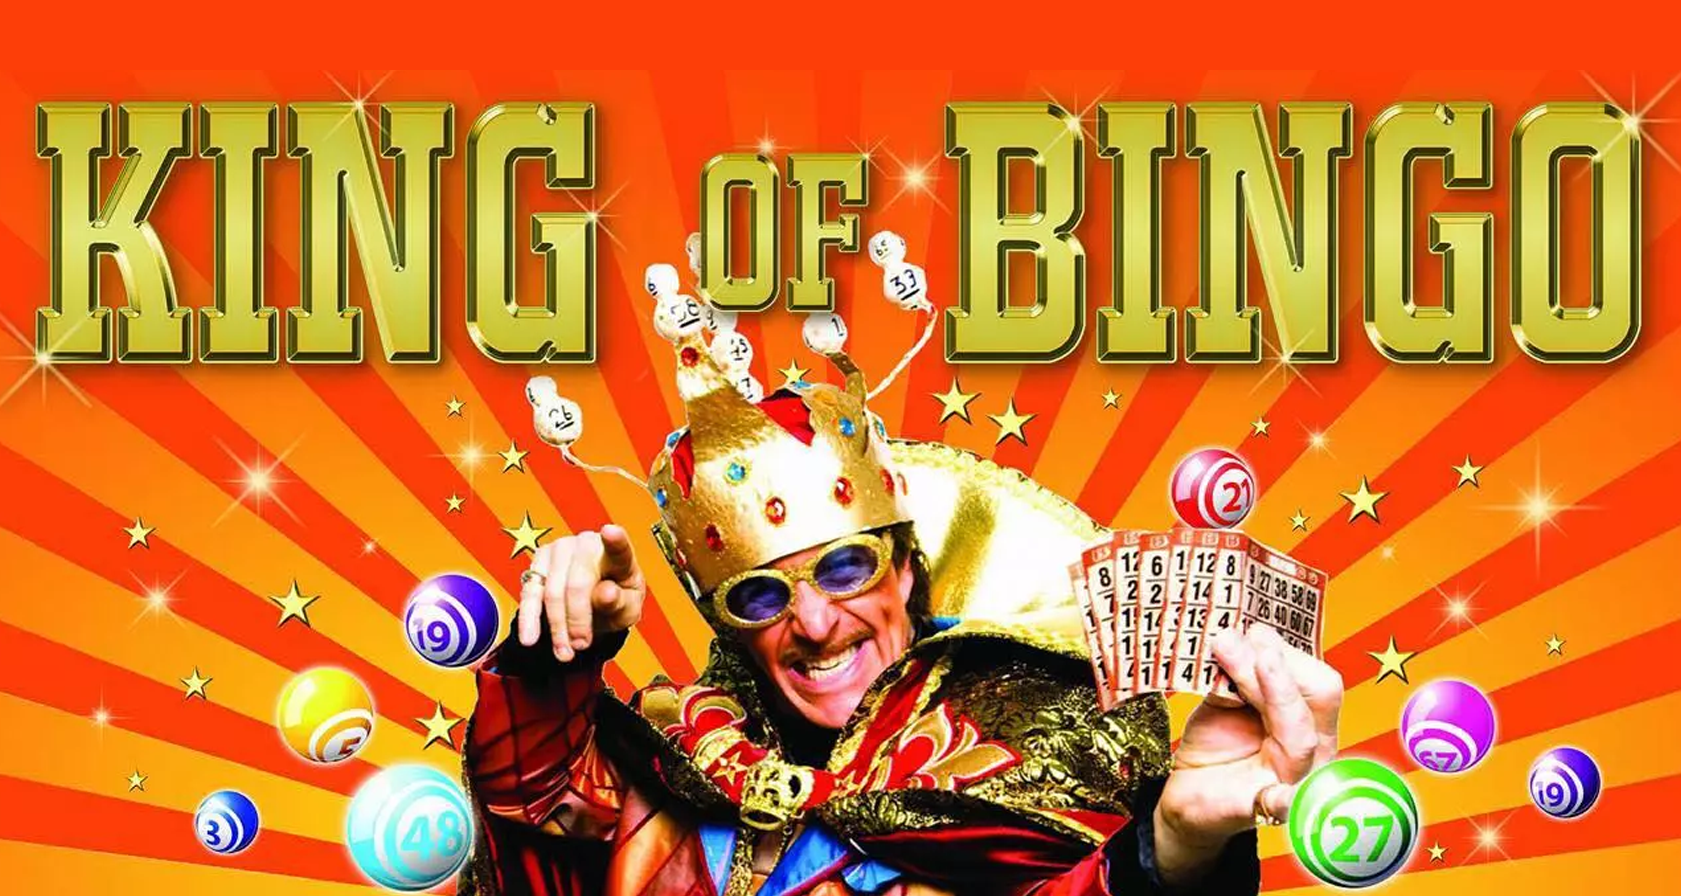 Teamuitje Lelystad: King of Bingo